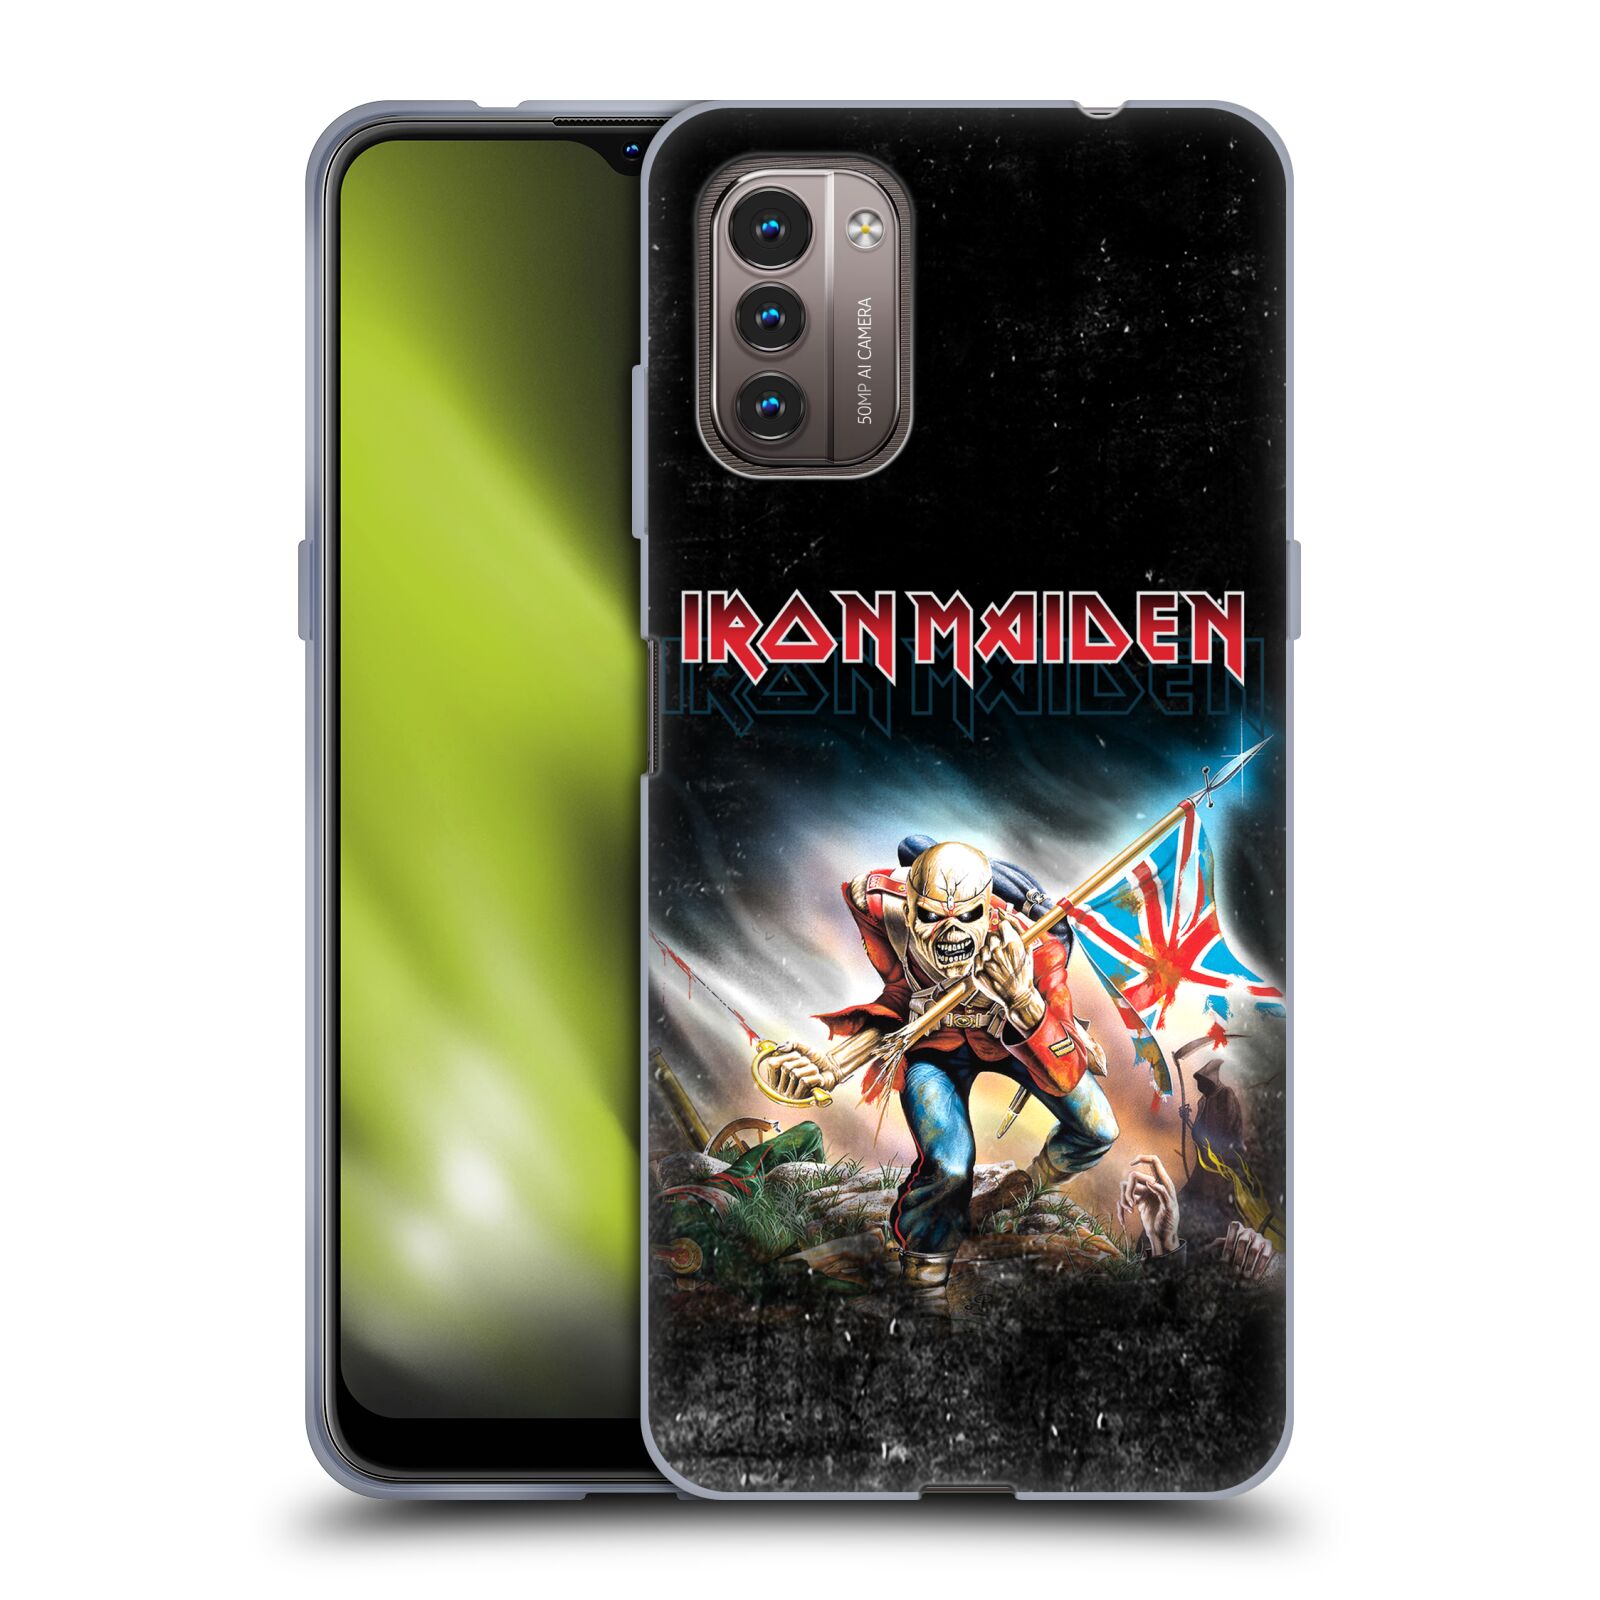 Silikonové pouzdro na mobil Nokia G11 / G21 - Head Case - Iron Maiden - Trooper 2016